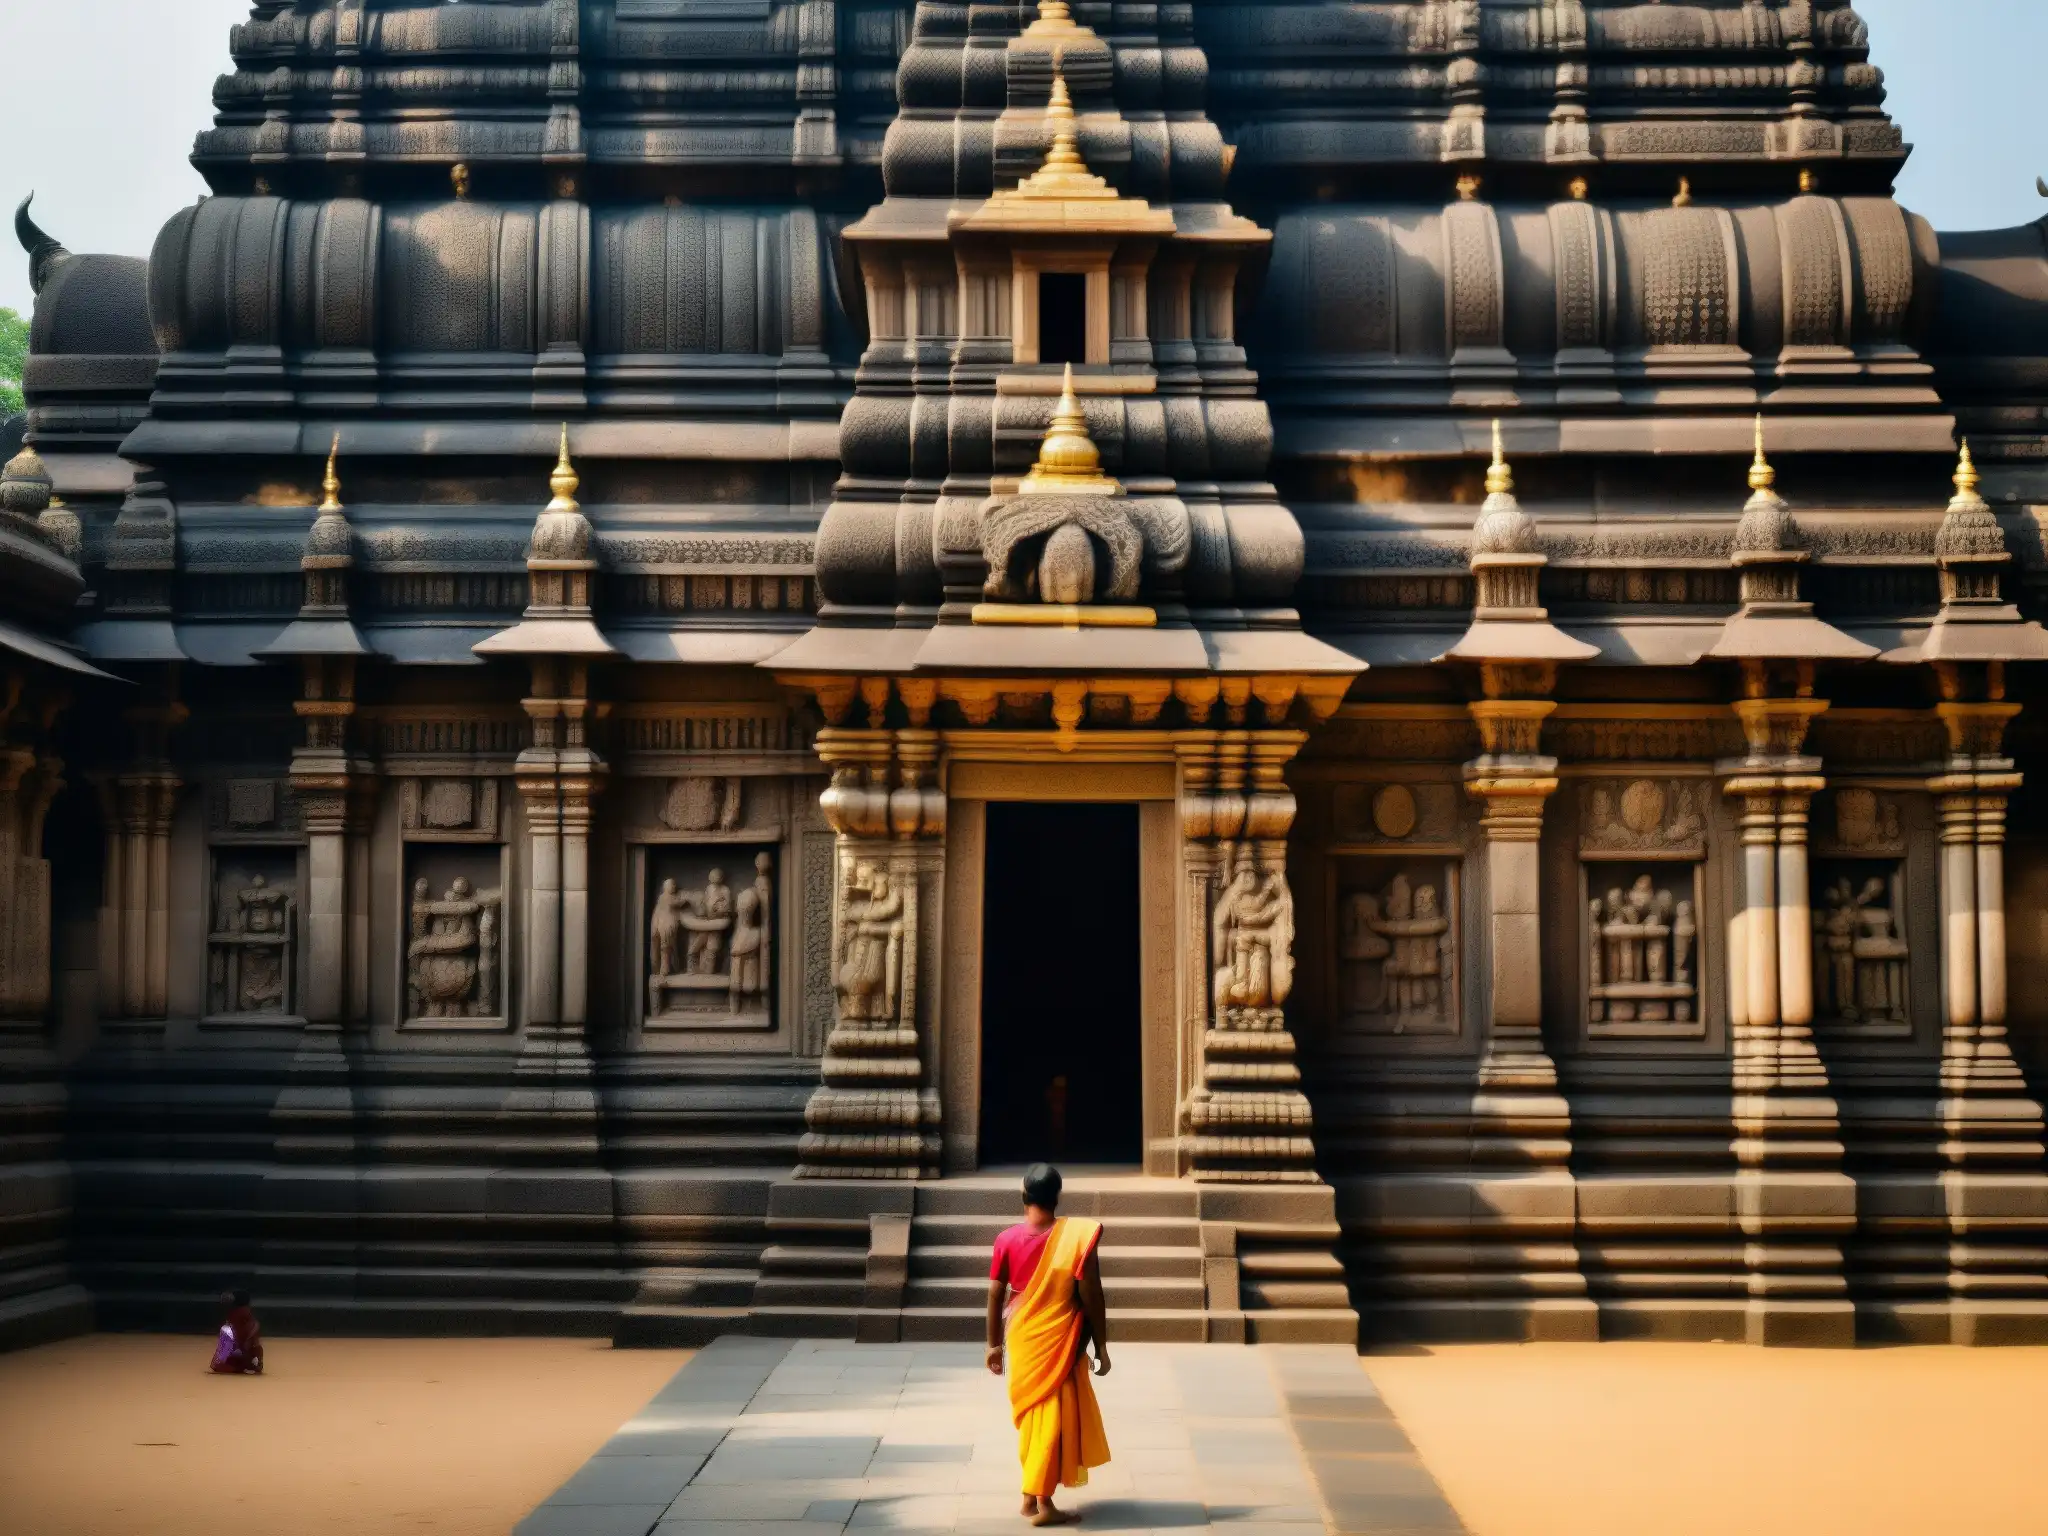 La imponente fachada de piedra del Templo Padmanabhaswamy revela secretos del Guardián del Tesoro, con visitantes y sombras dramáticas